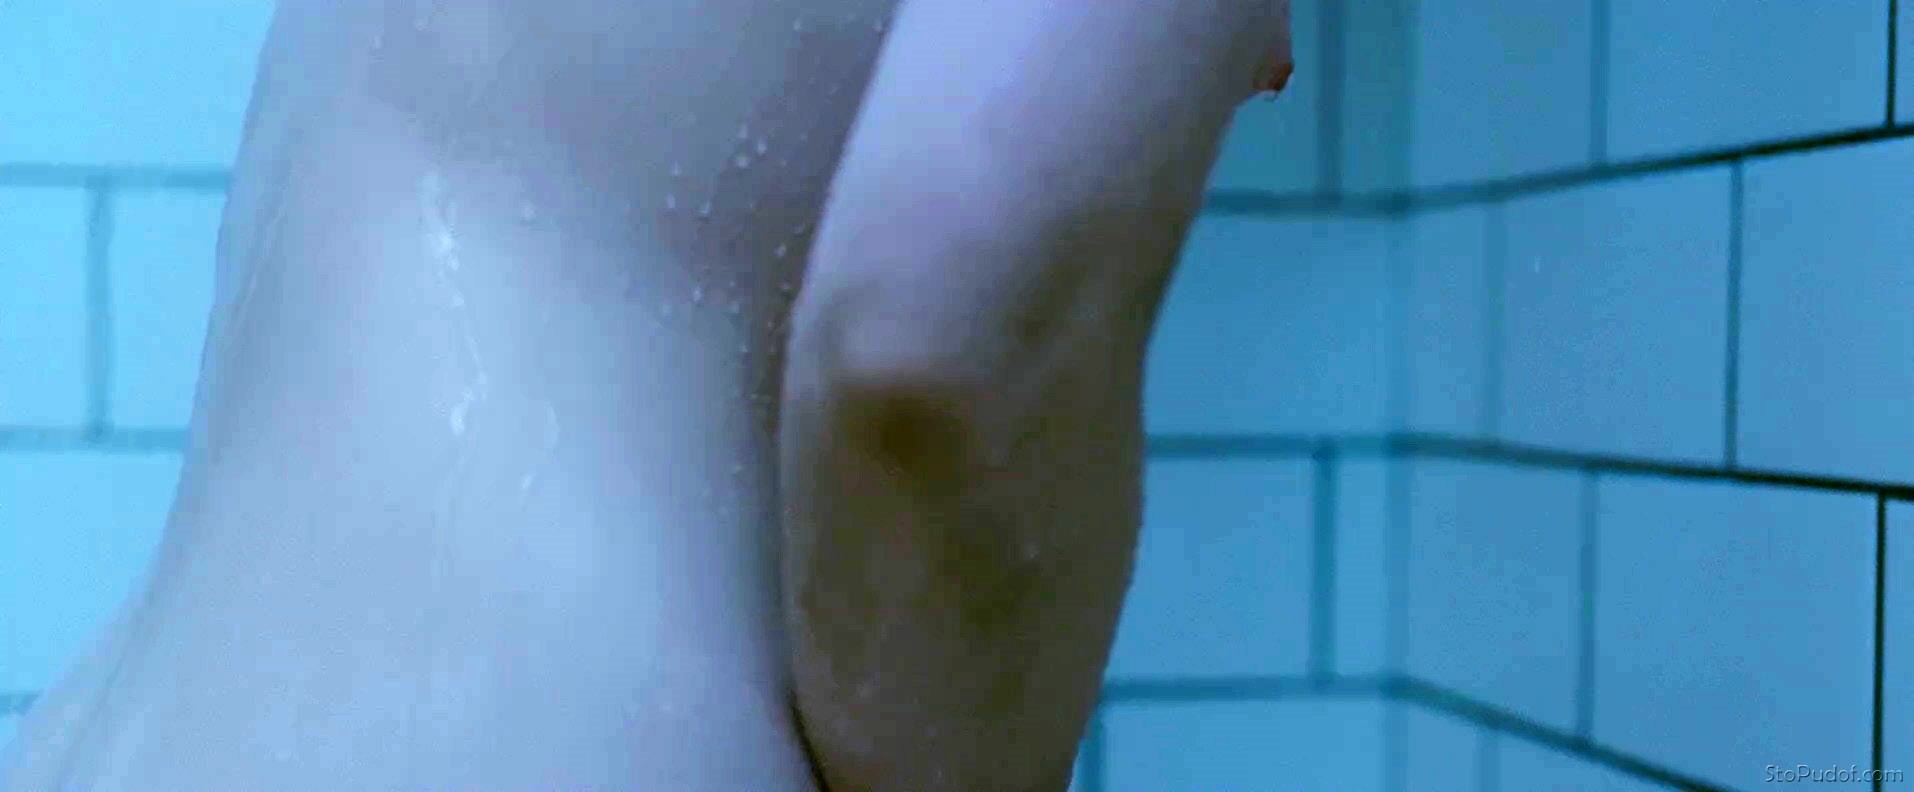 Mia Wasikowska leaked photos nudes - UkPhotoSafari